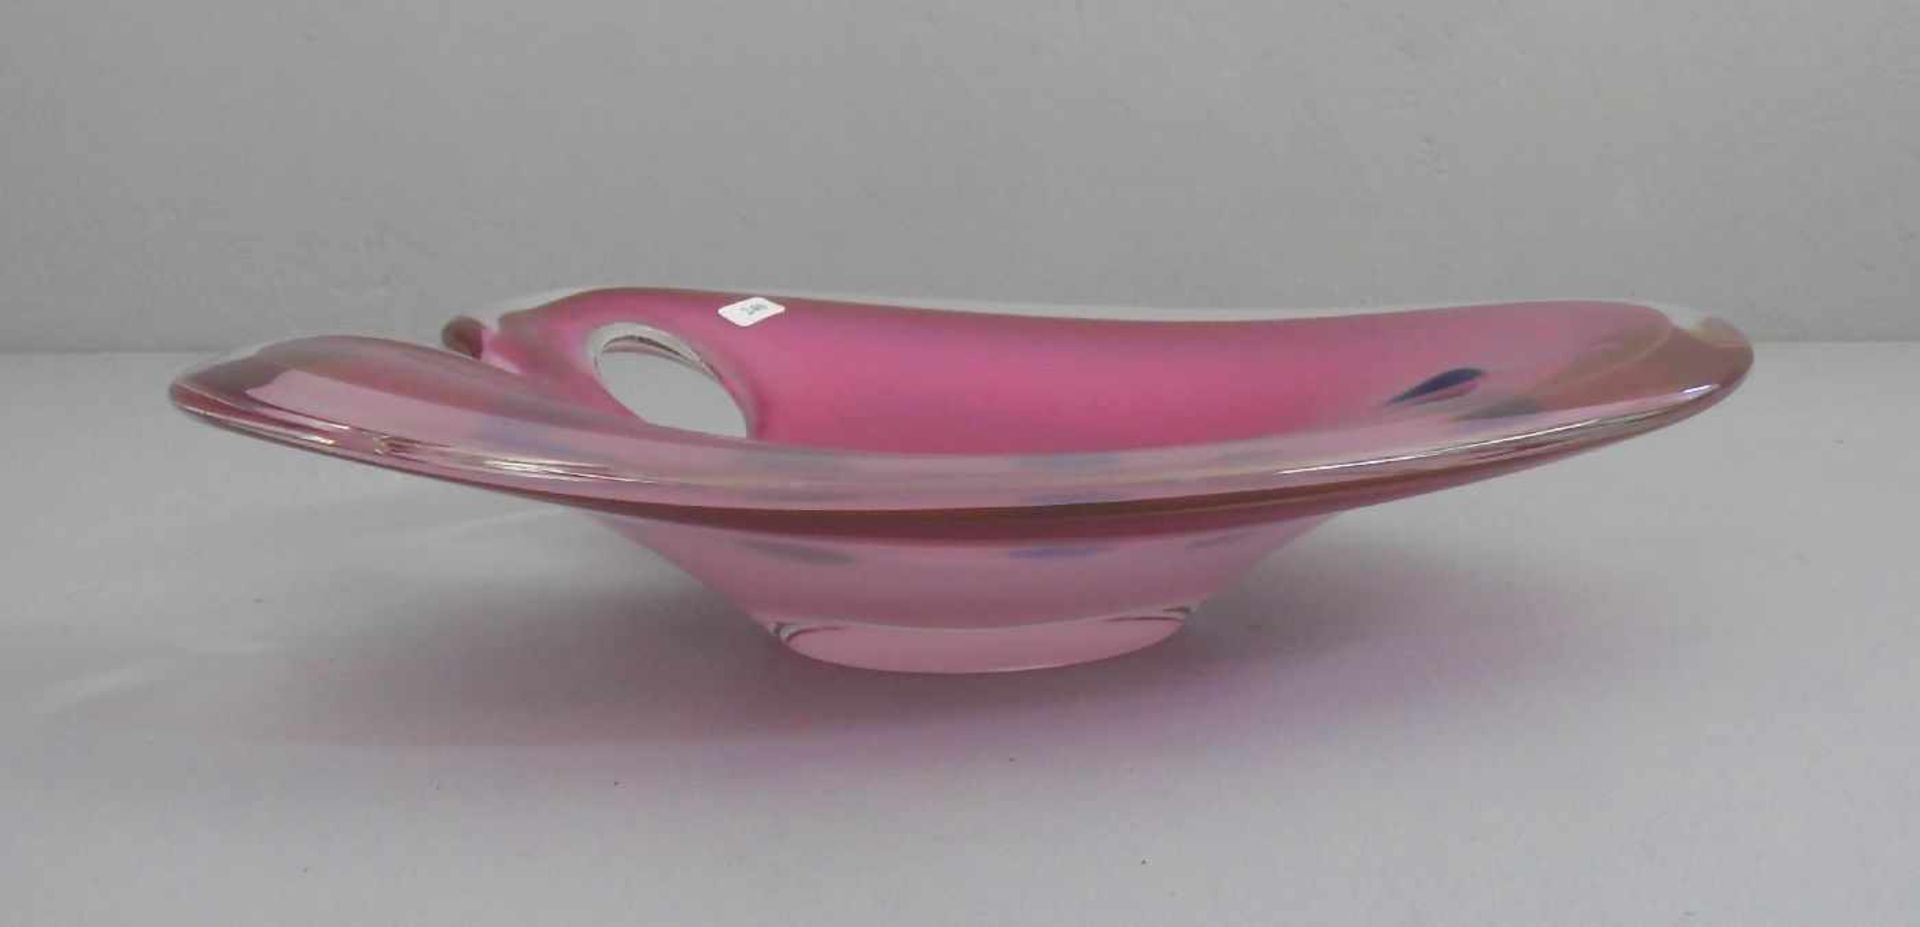 GLASSCHALE IN DER ART EINER PALETTE / bowl, unter dem Stand mit Nadelsignatur: Flygsfors - - Image 2 of 3